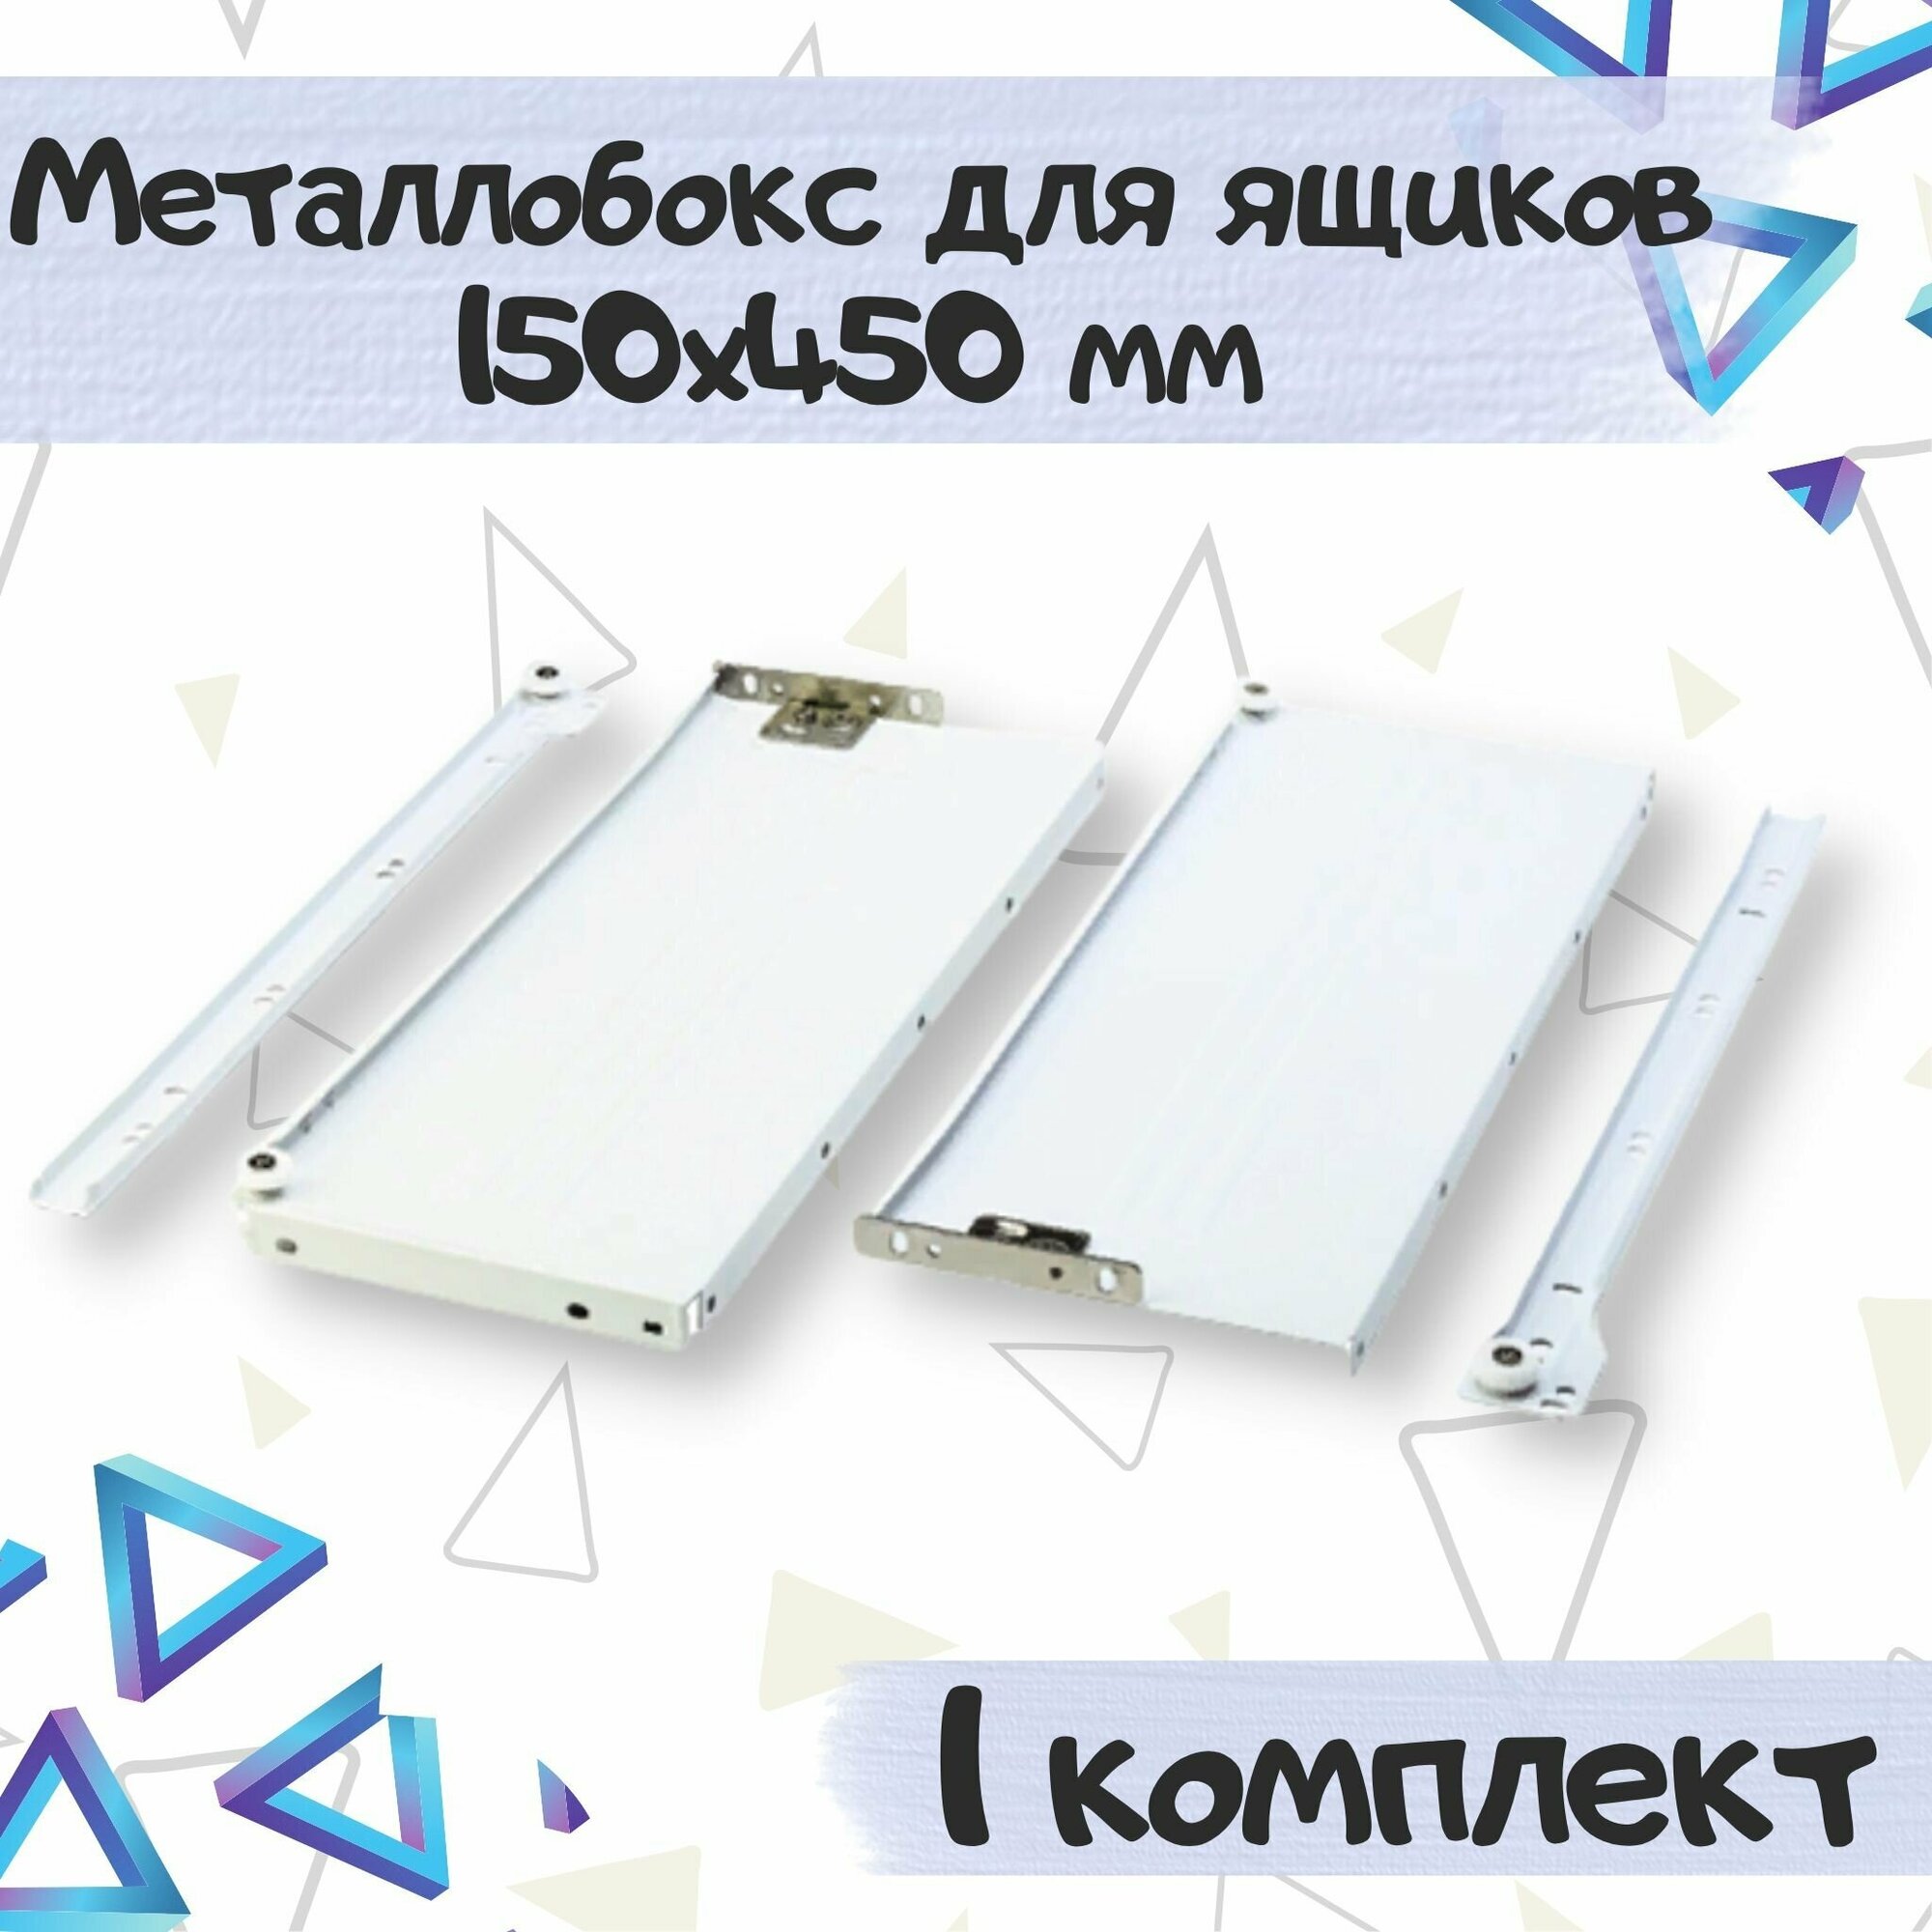 Металлобокс для ящиков 150х450 мм, метабокс белый - 1 комплекта(для 1 ящика)